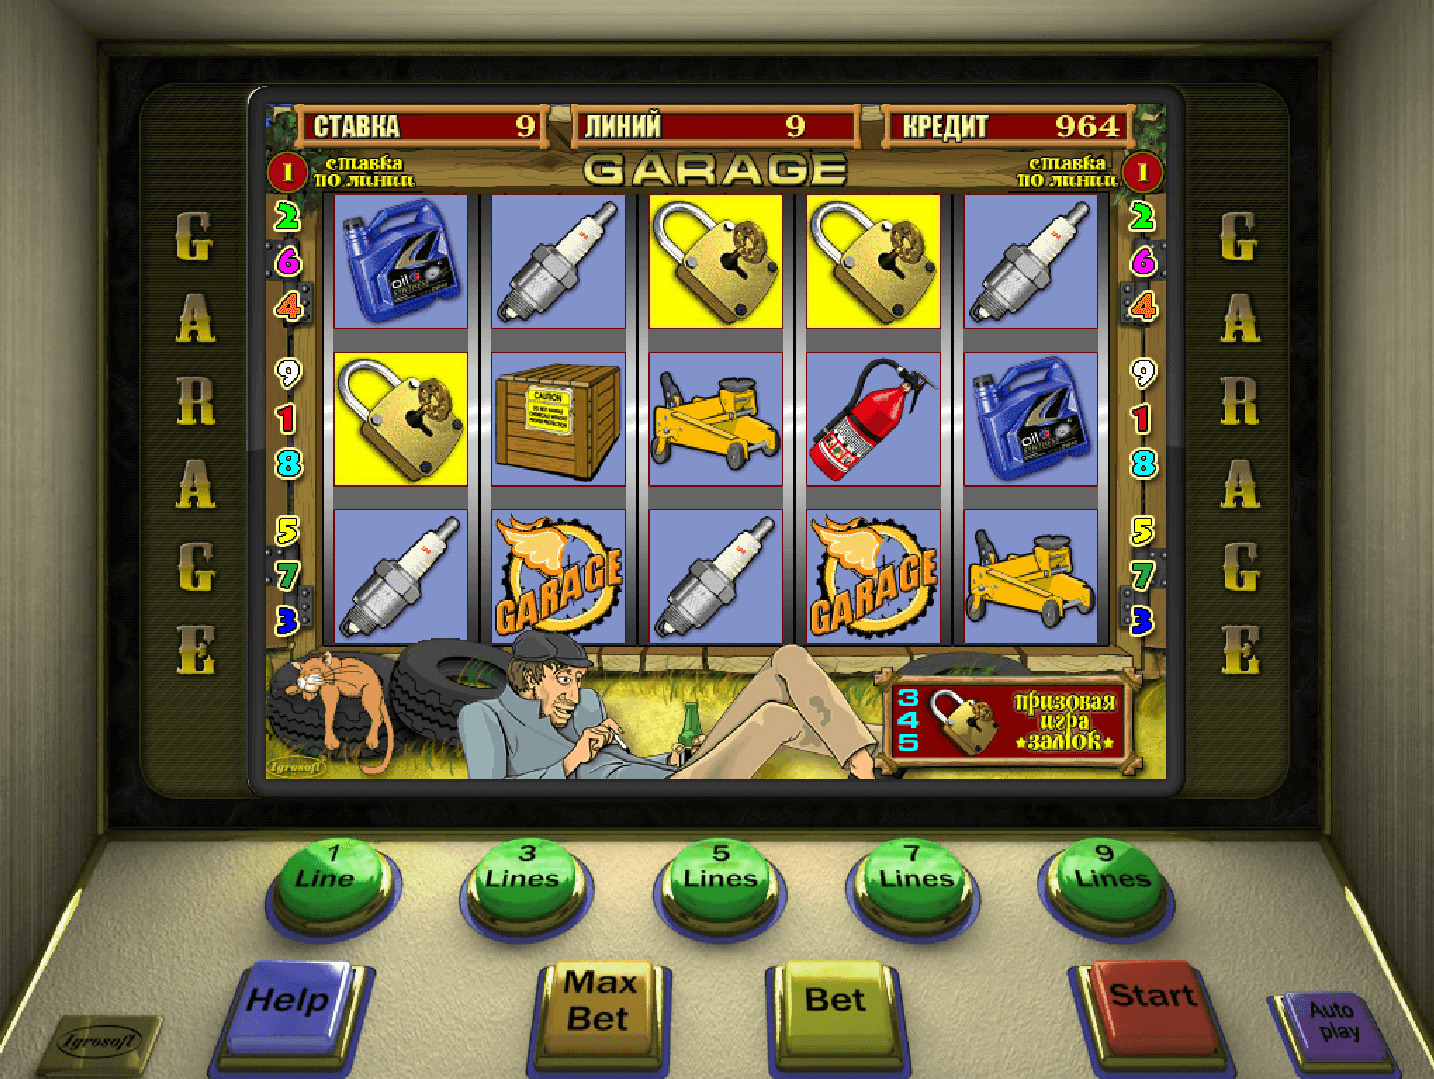 Казино игры играть бесплатно без регистрации в онлайн casino on line slots emplre